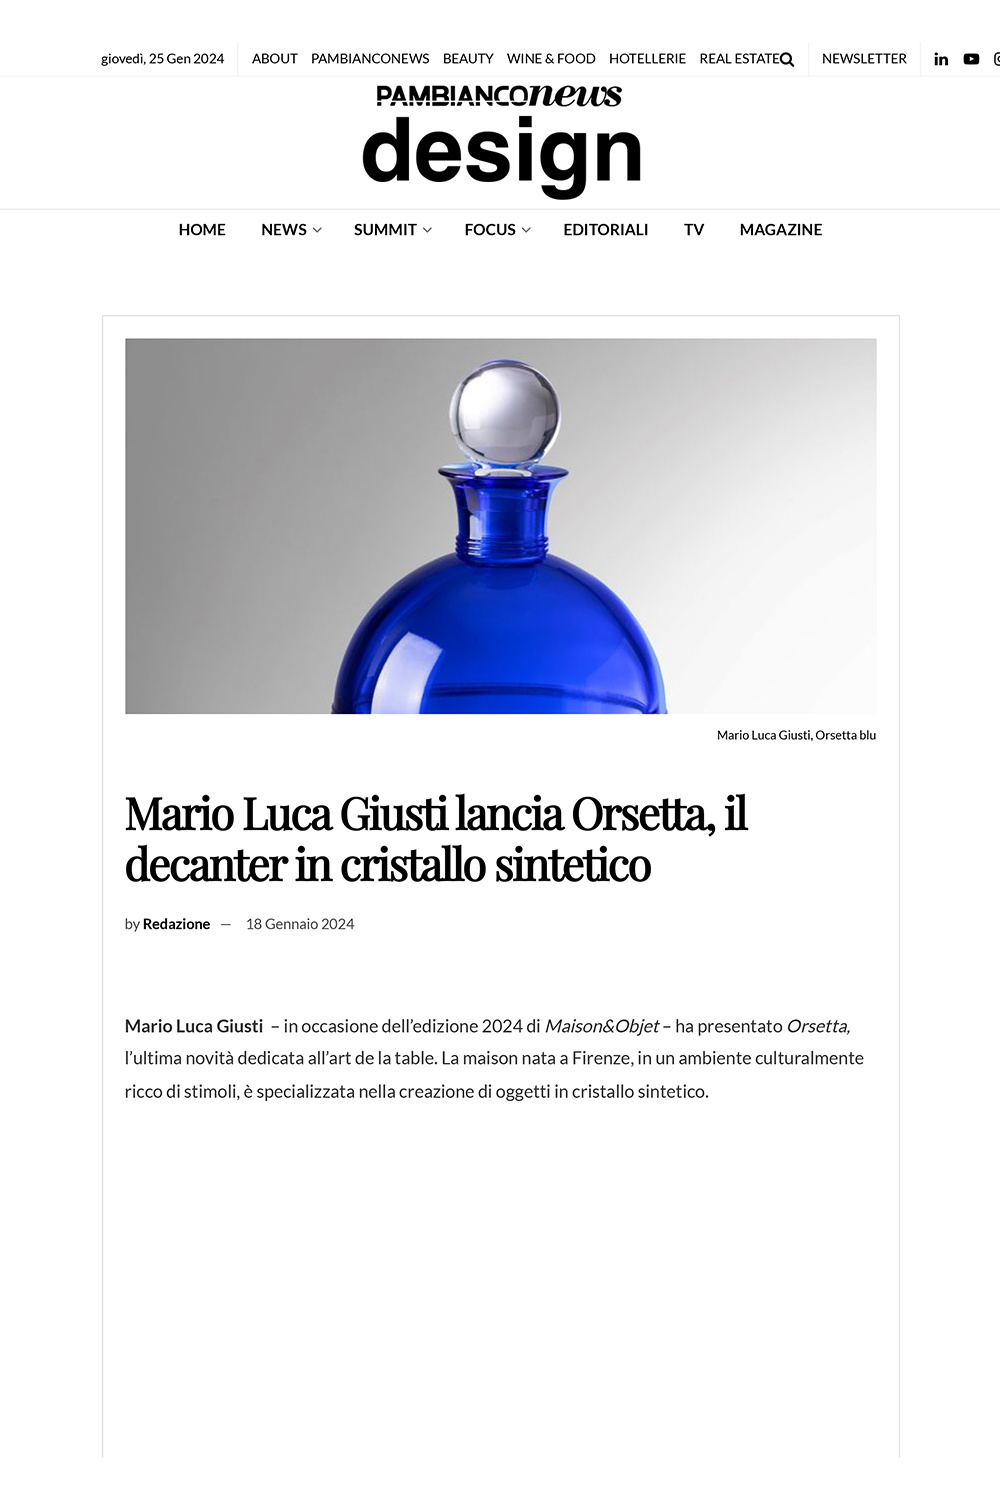 Mario Luca Giusti lancia Orsetta, il decanter in cristallo sintetico